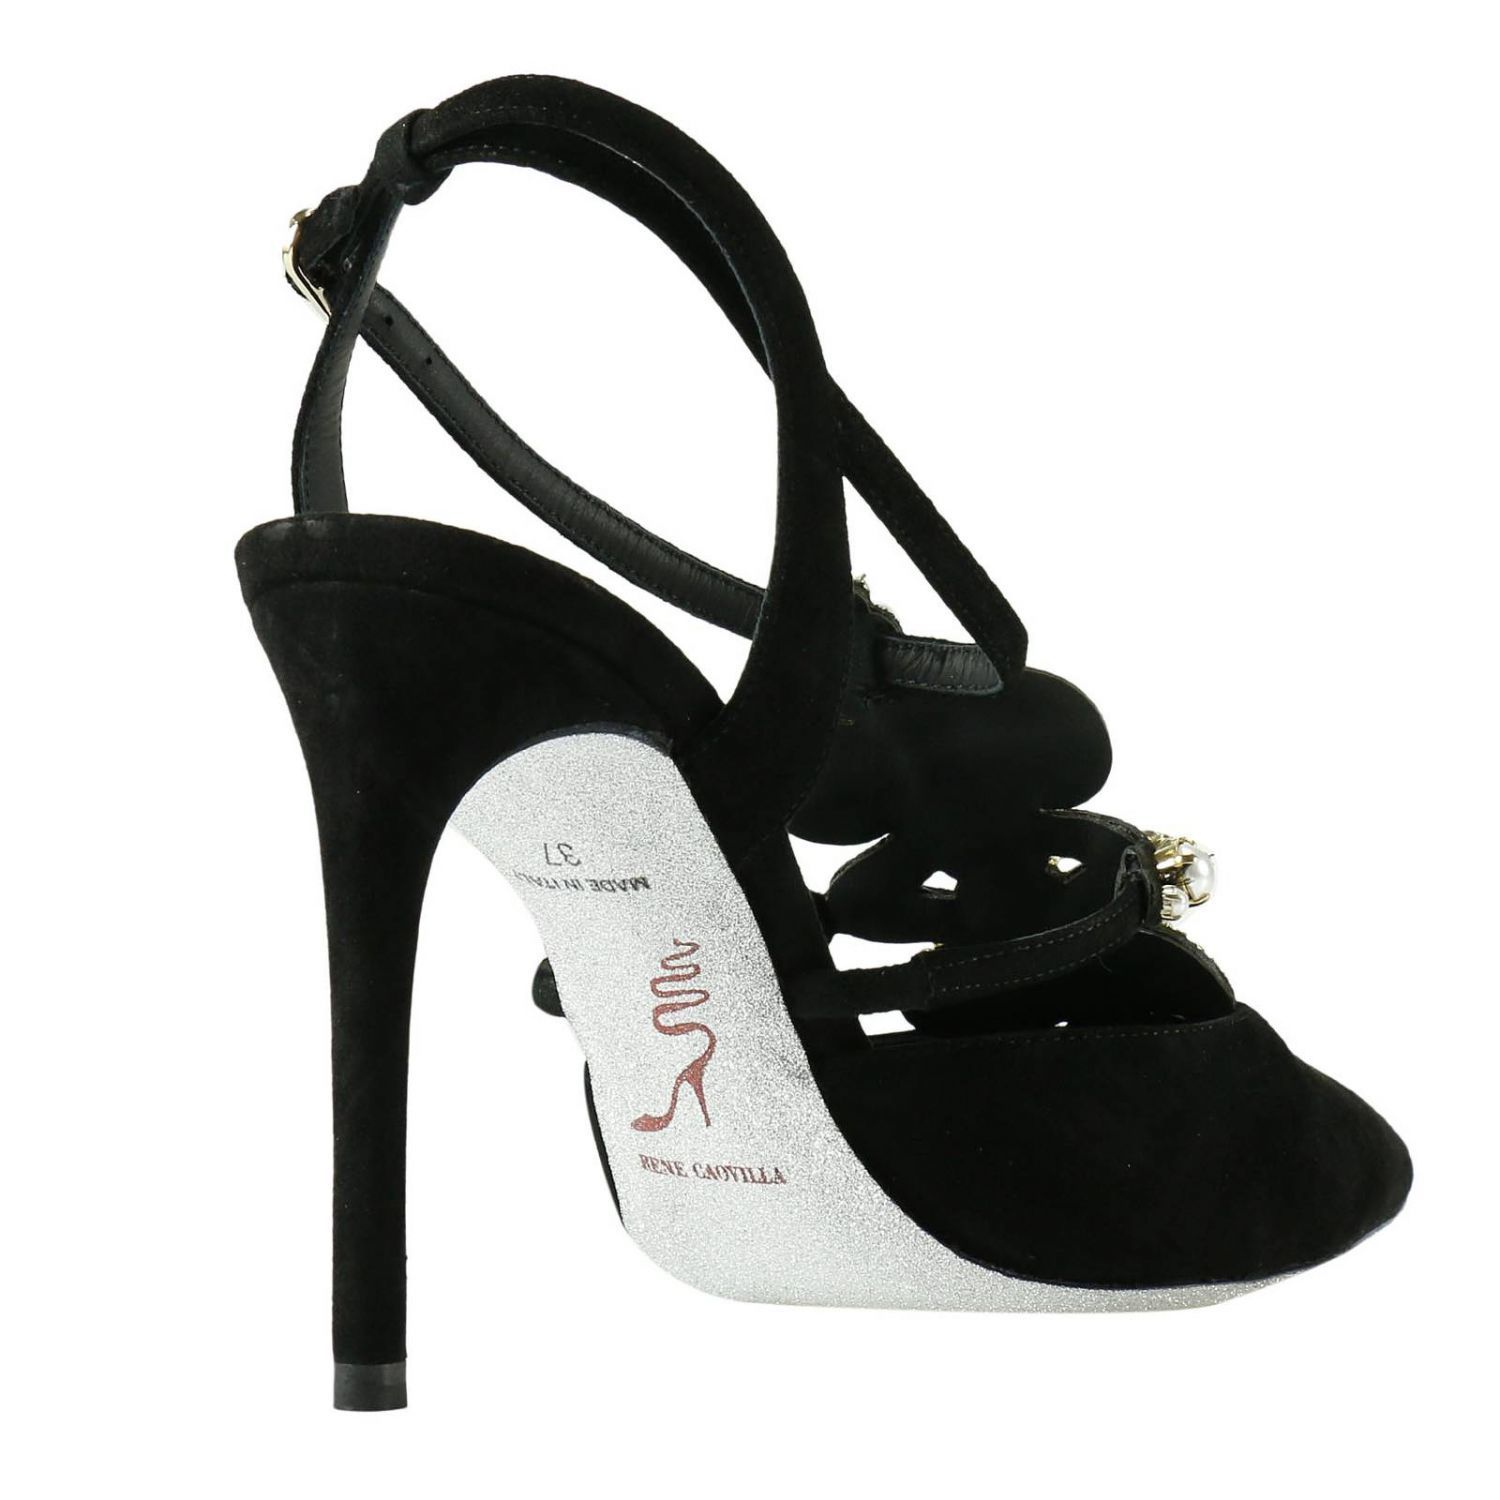 René Caovilla - Pumps Shoes Women Rene Caovilla - c09194-100-0000ncma ...